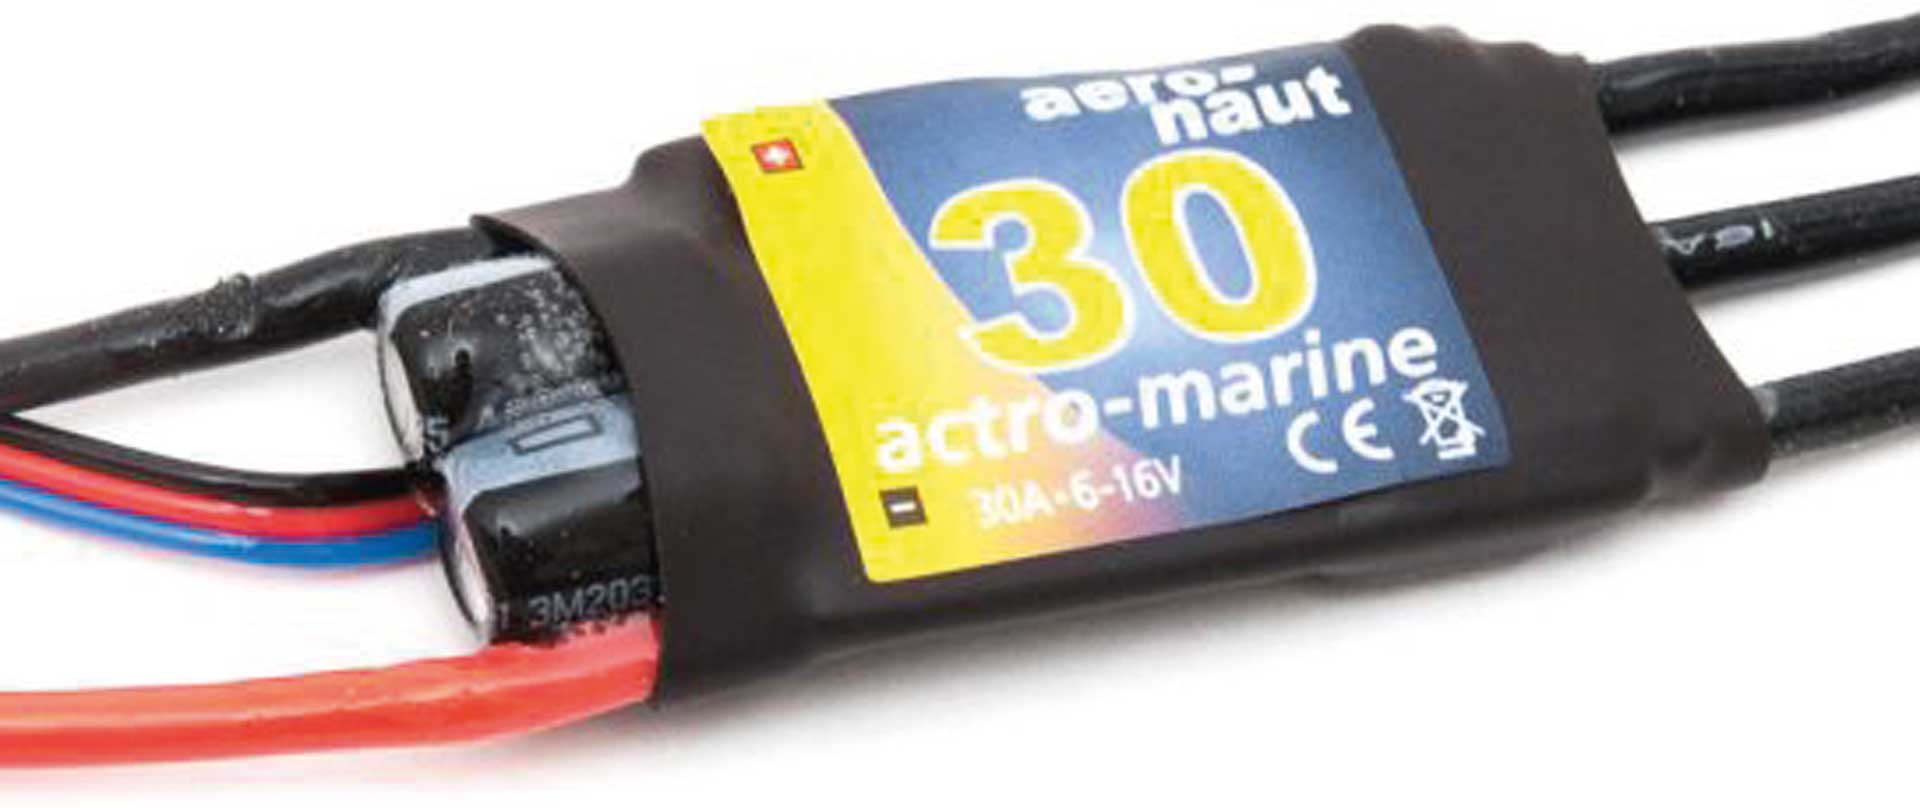 AERONAUT Régulateur actro-marine 30